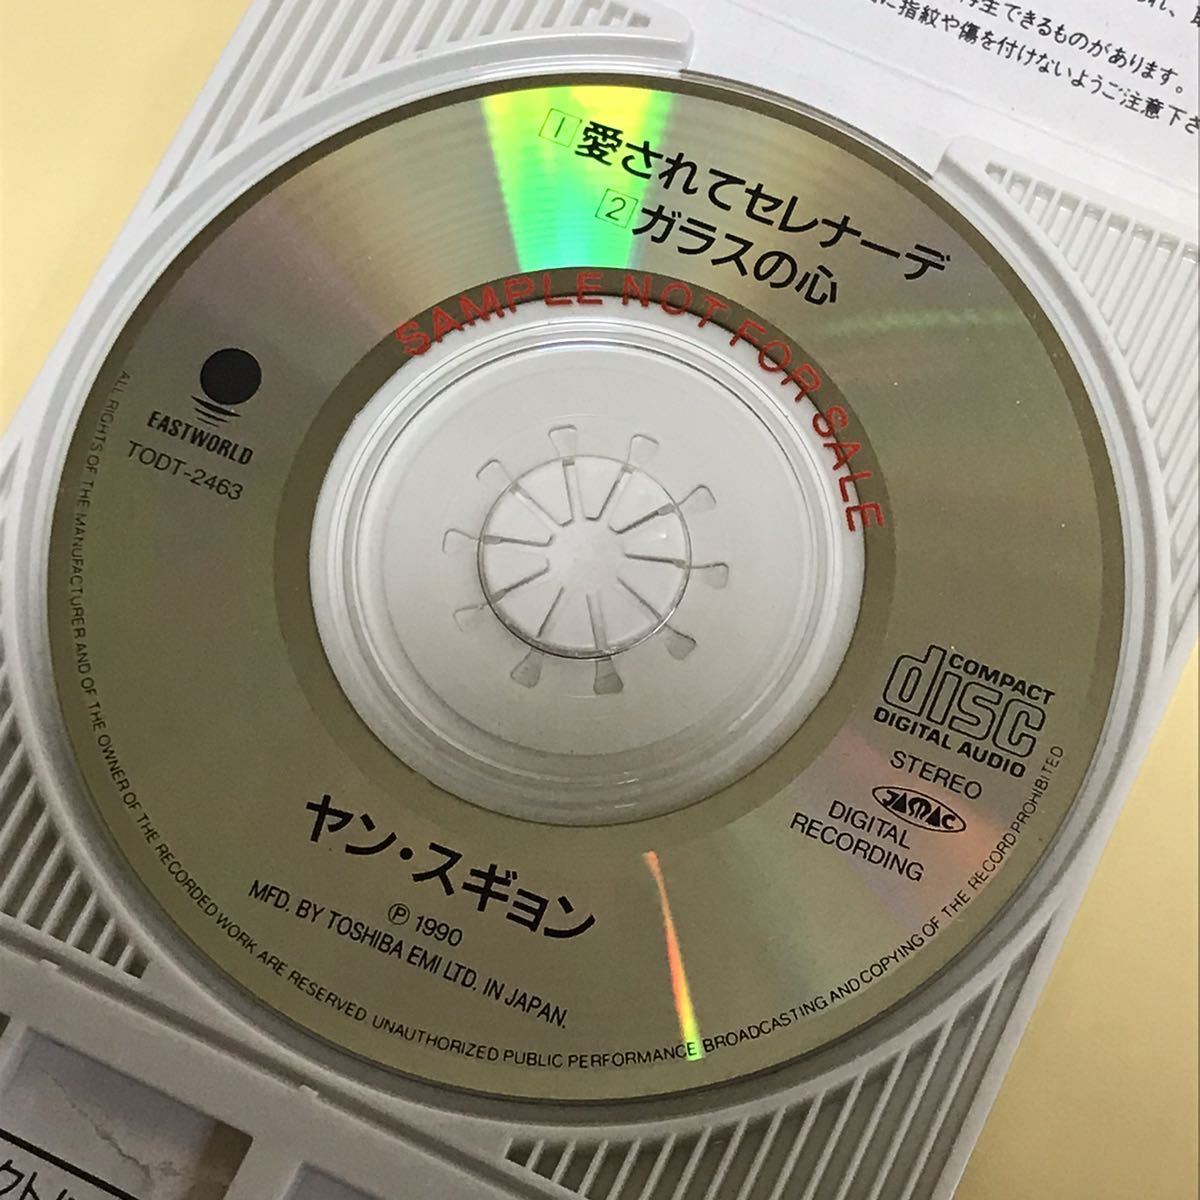 見本盤8cmCDシングル ◯ヤン スギョン ●愛されてセレナーデ_画像6